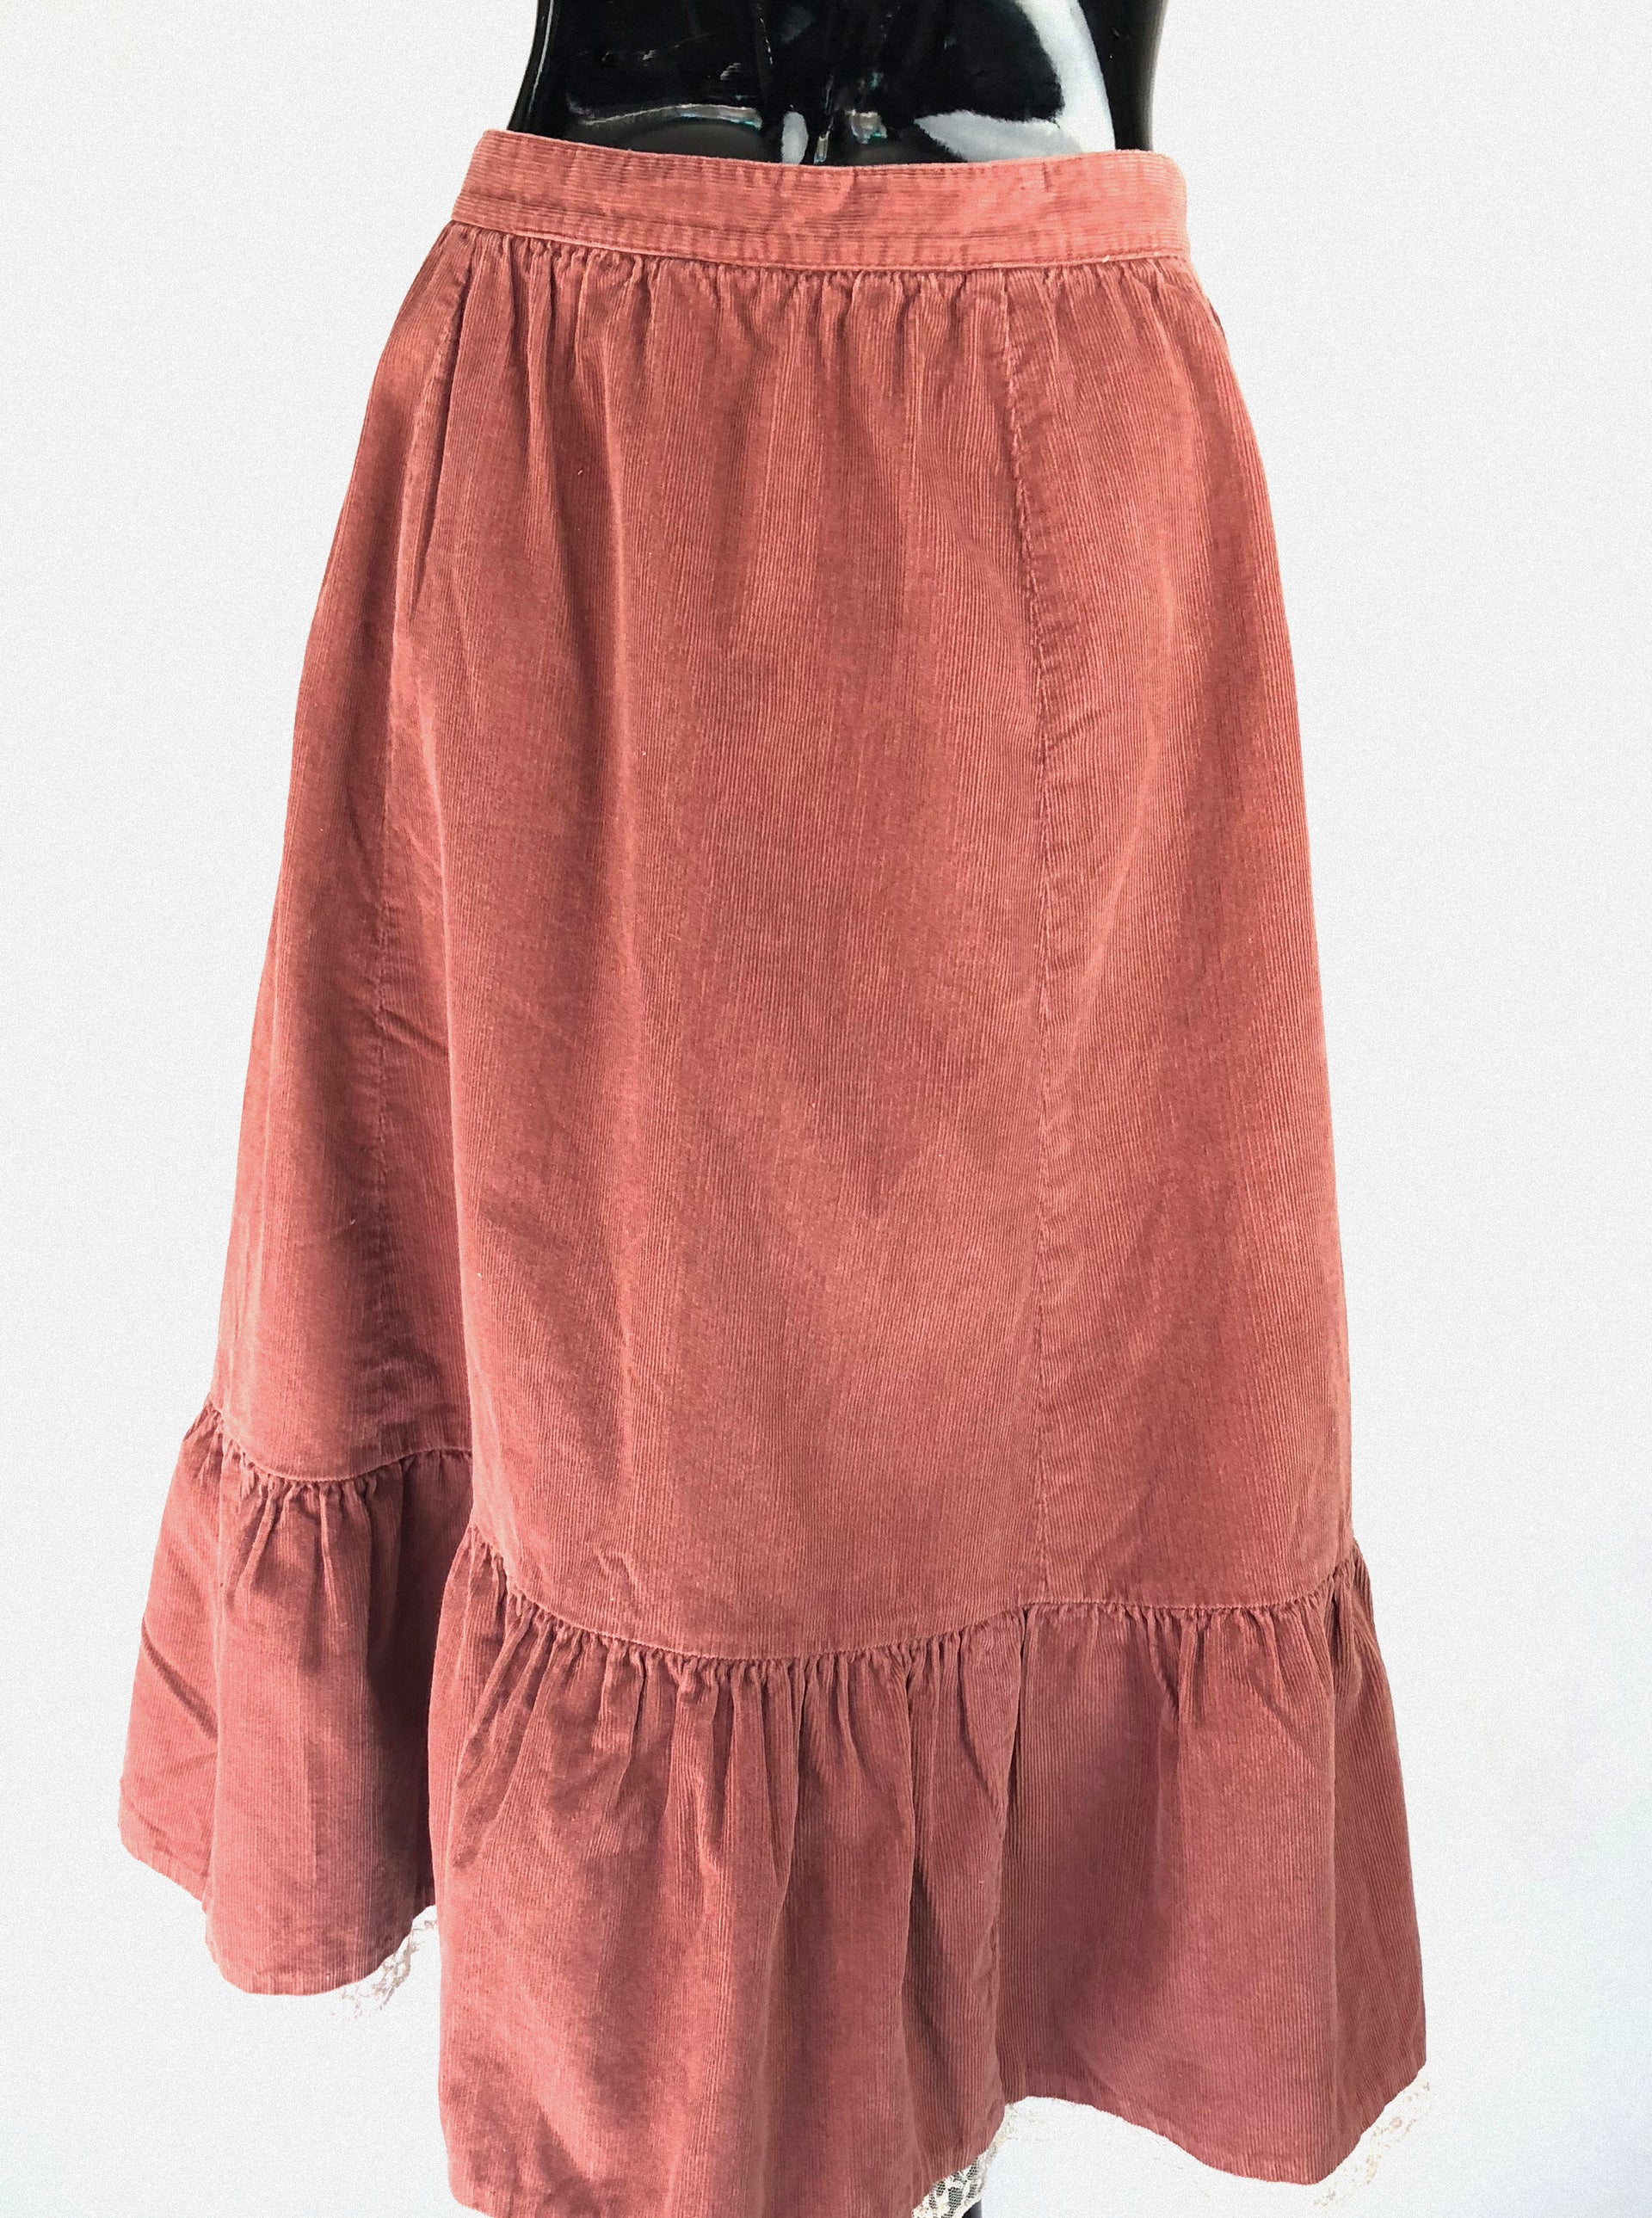 Vintage Corduroy Shabby Chic Skirt